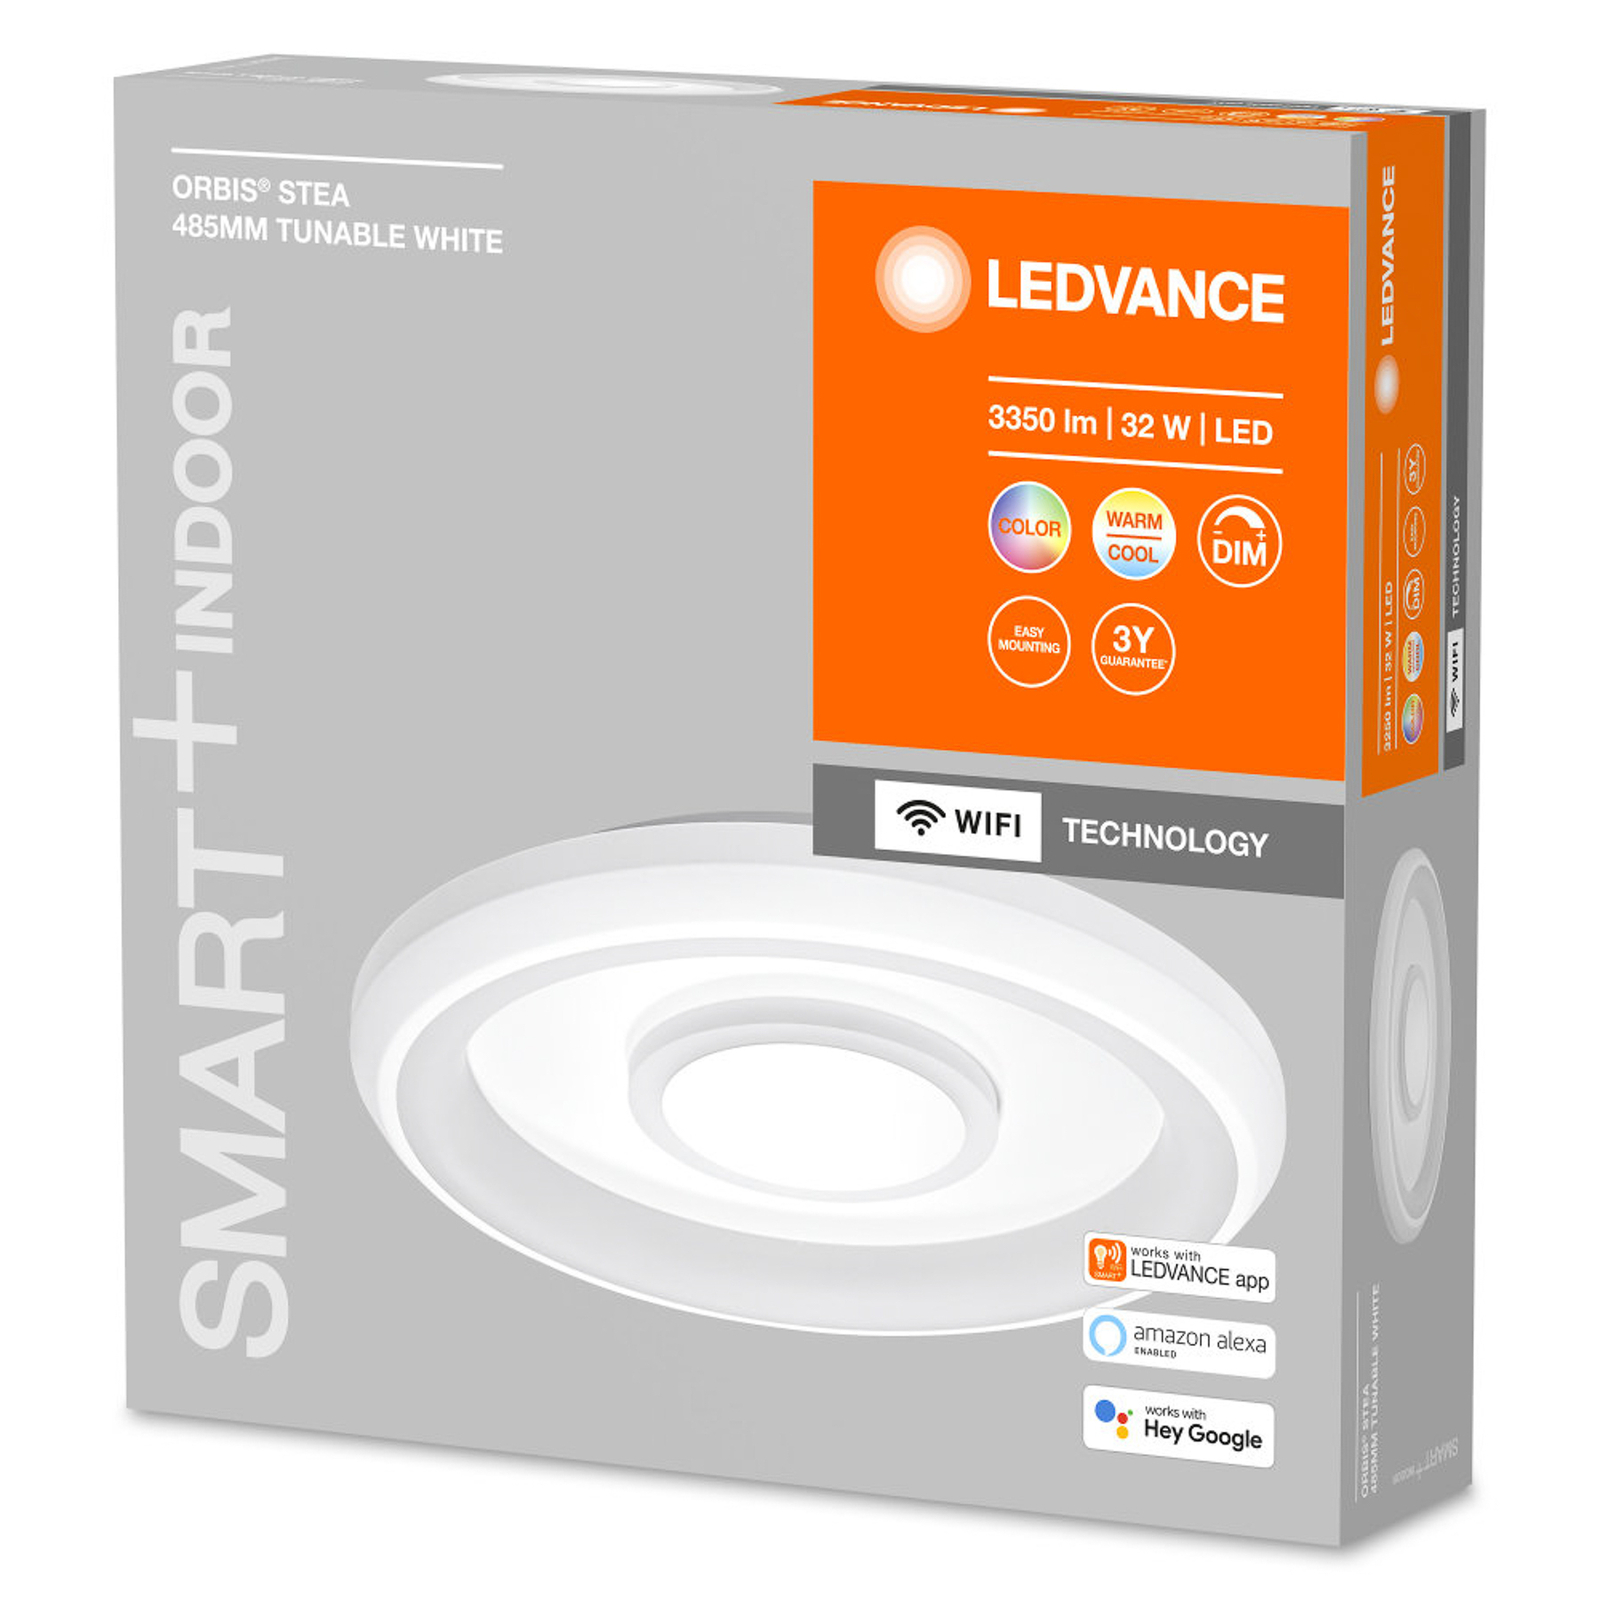 LEDVANCE SMART+ WiFi Orbis Stea LED ceiling light